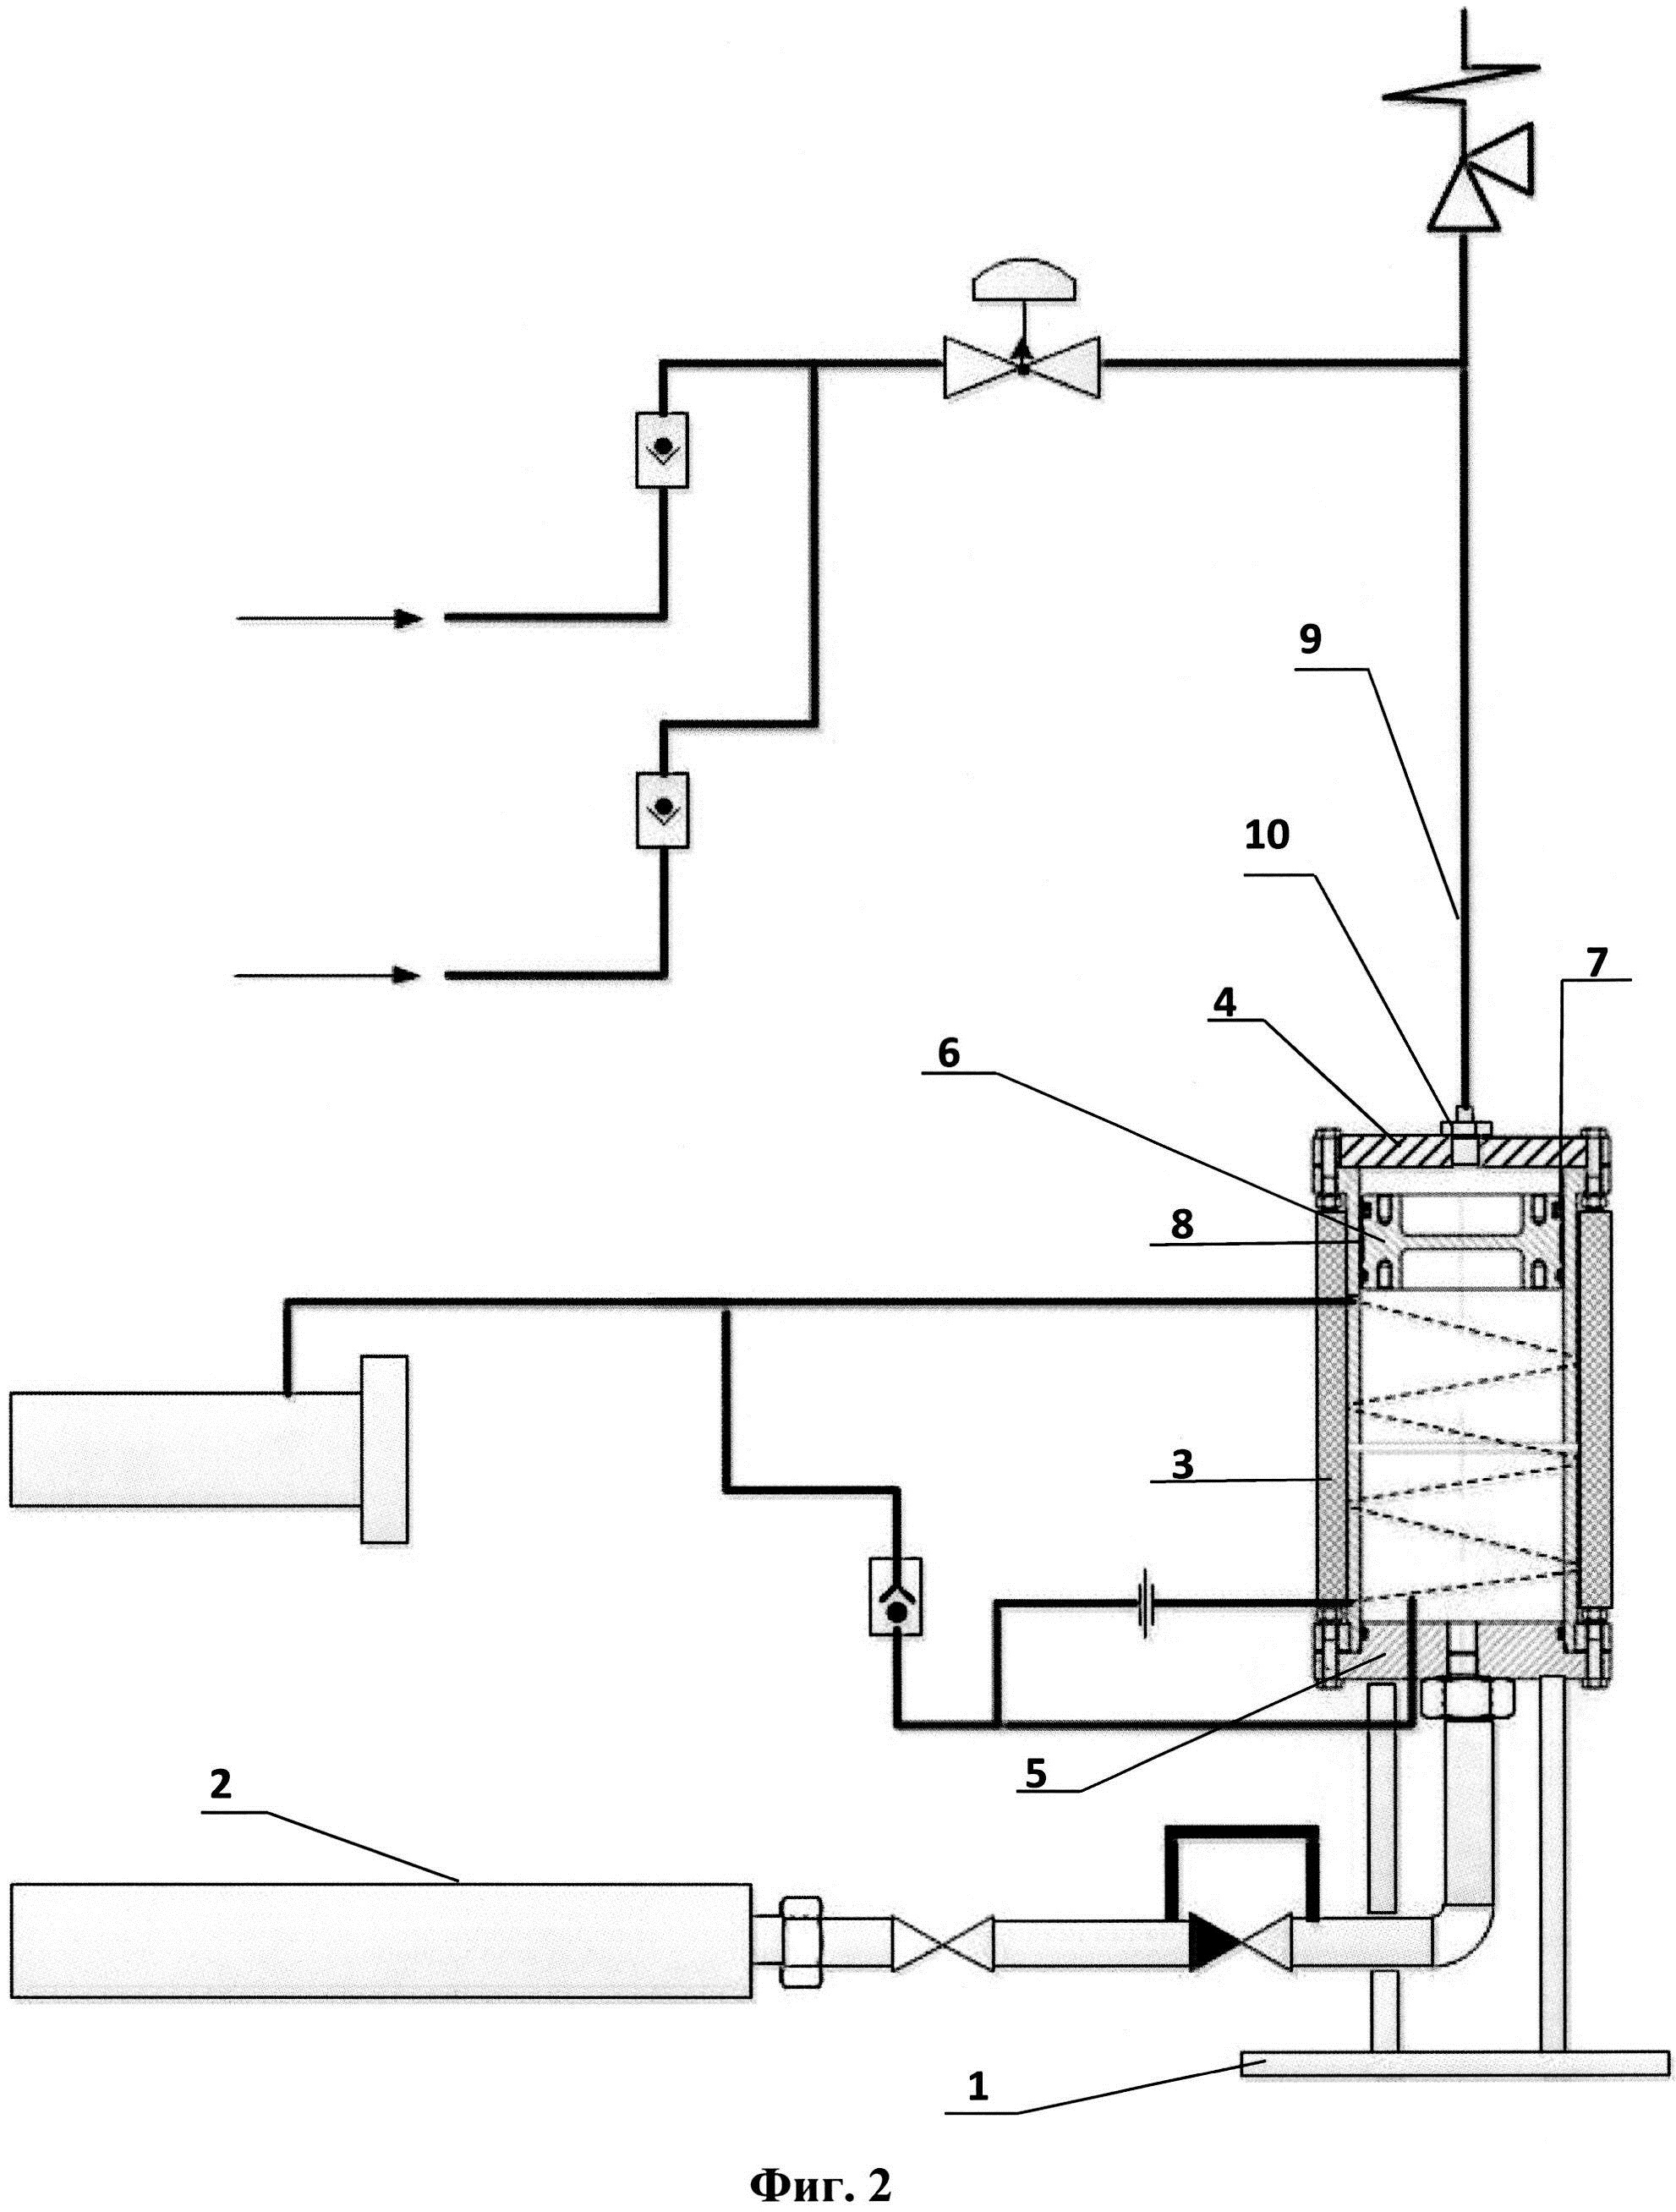 Способ стабилизации давления масла в системе смазки газоперекачивающего агрегата